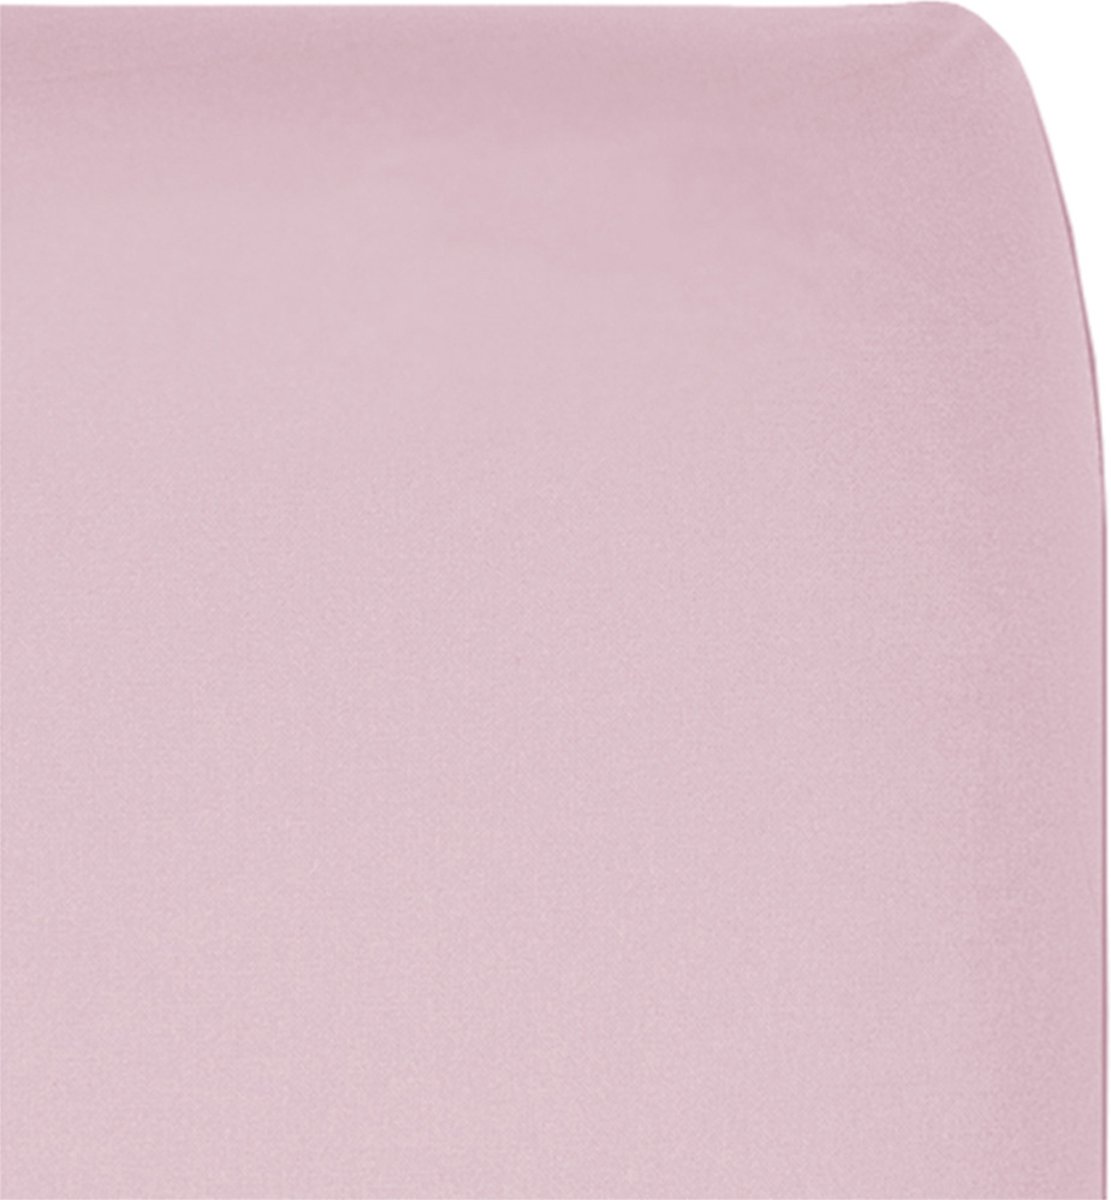 Cottonbaby - Hoeslaken junior - 80x165 cm (maat Ikea) - uni roze